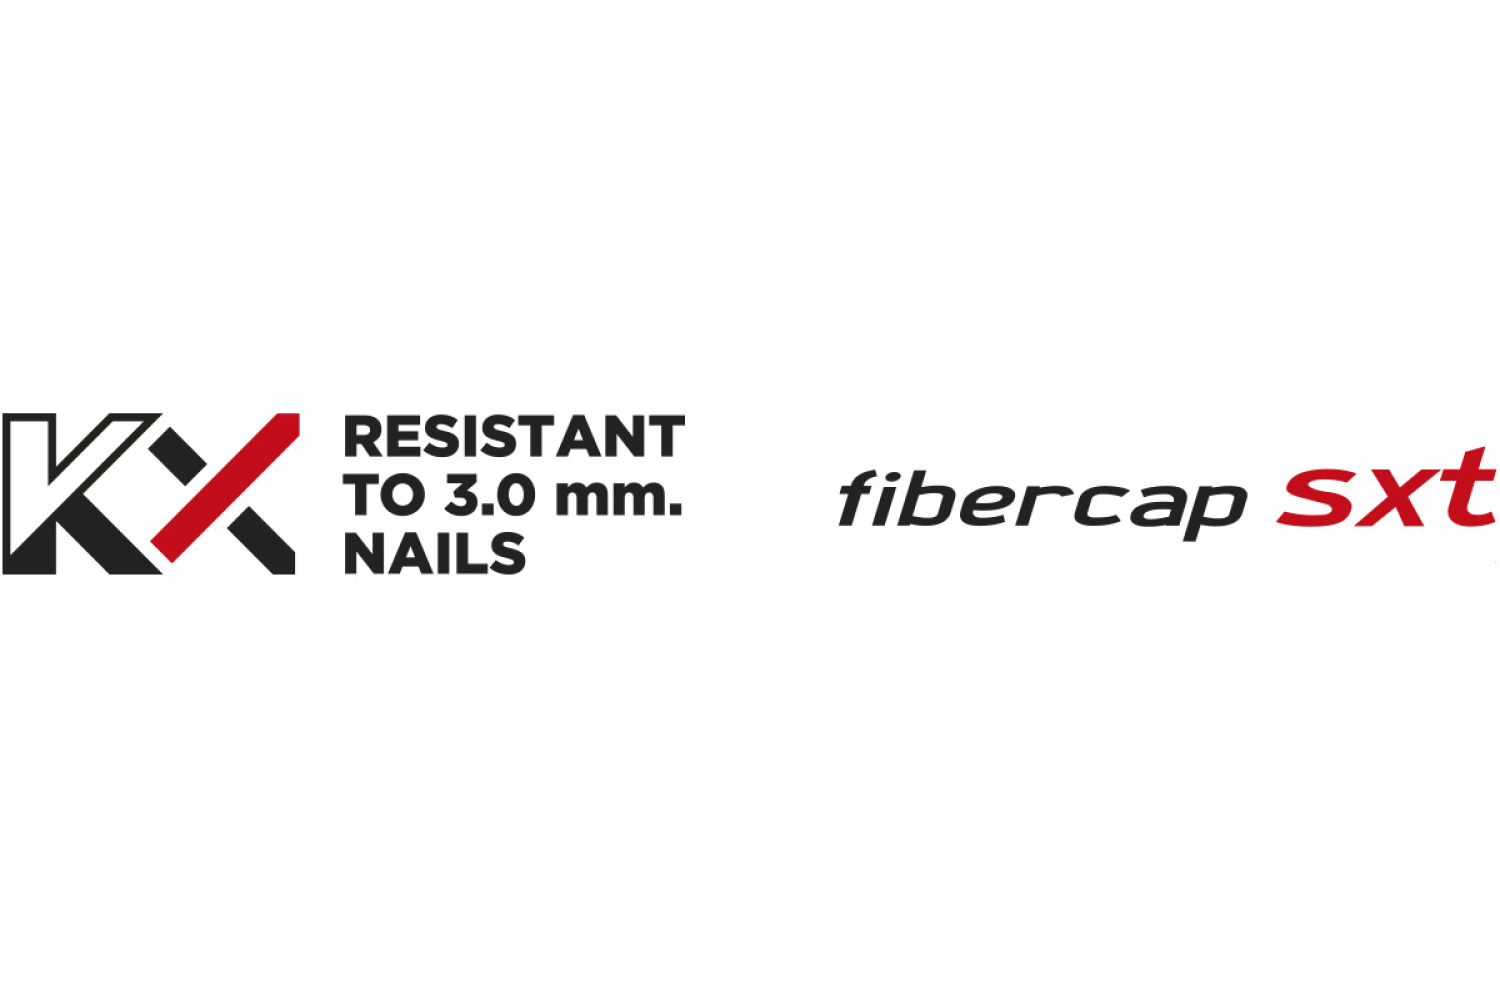 KX 3mm Fiberglass Nail Resistant Toe Cap